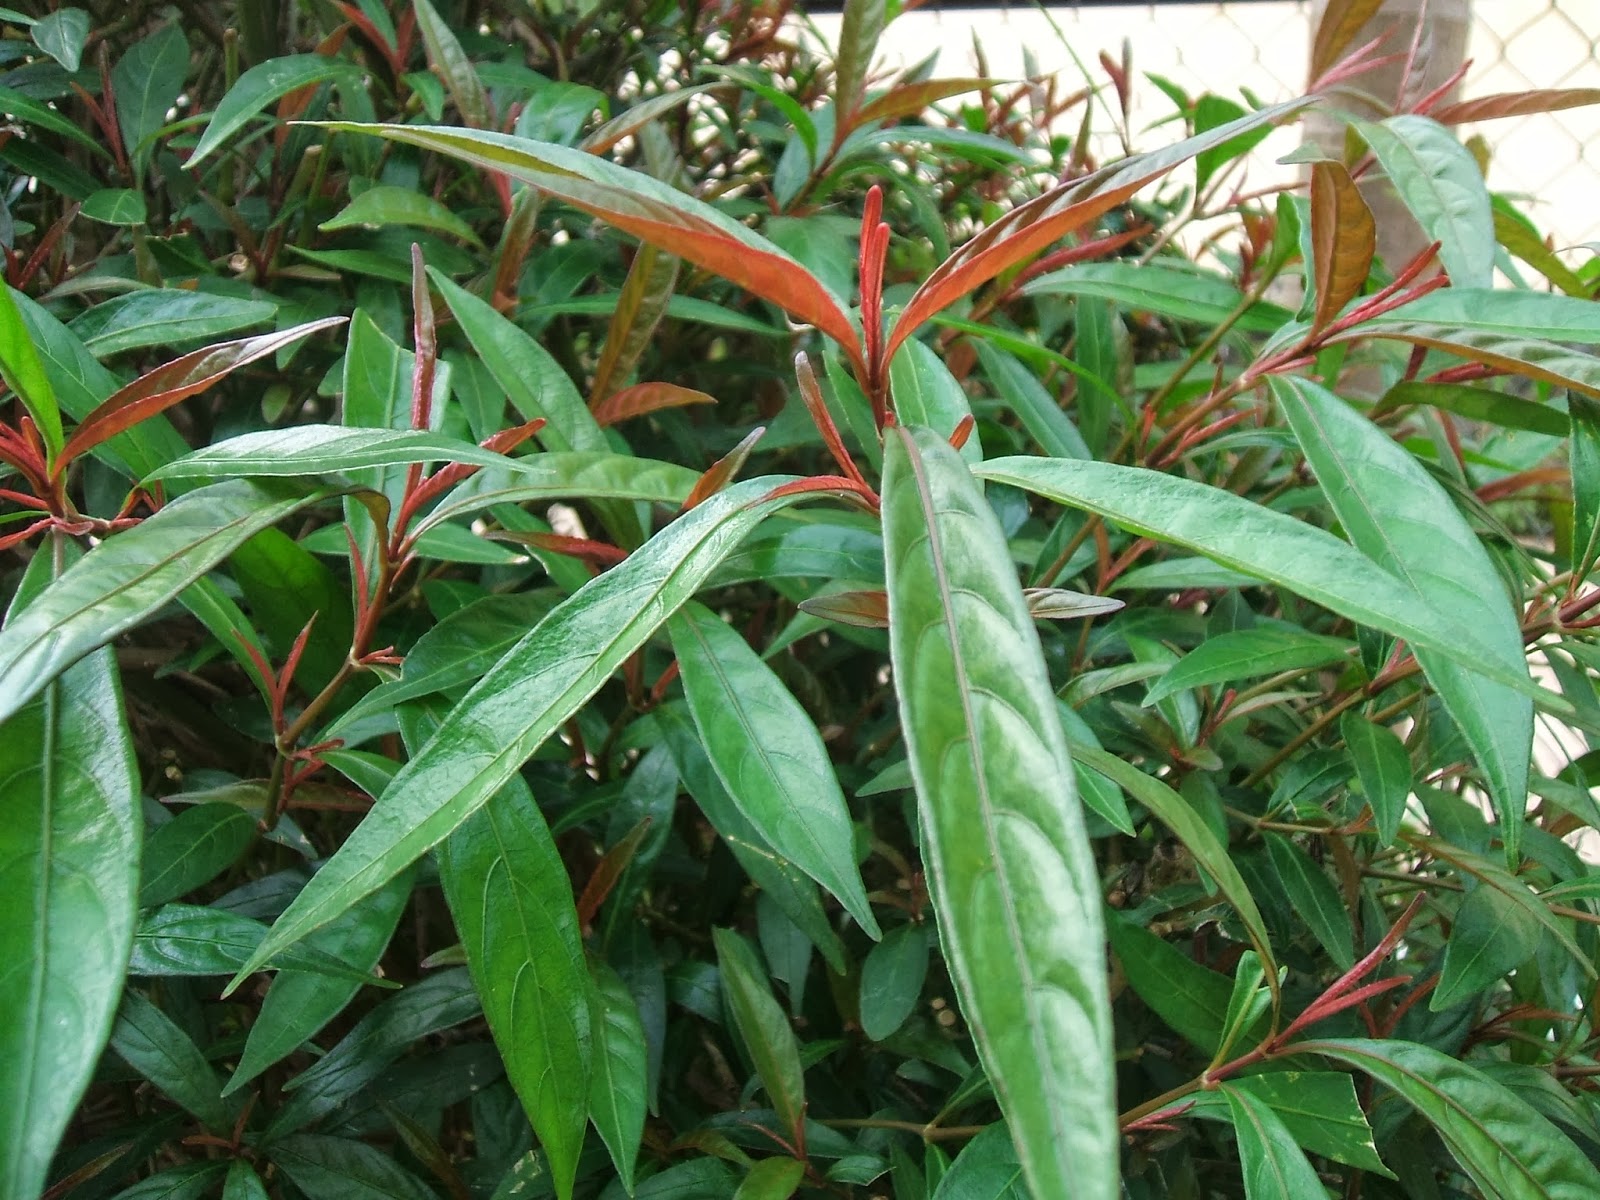 Kỹ thuật trồng cây Hoàn Ngọc - 'thần dược' trị nhiều loại bệnh tại nhà